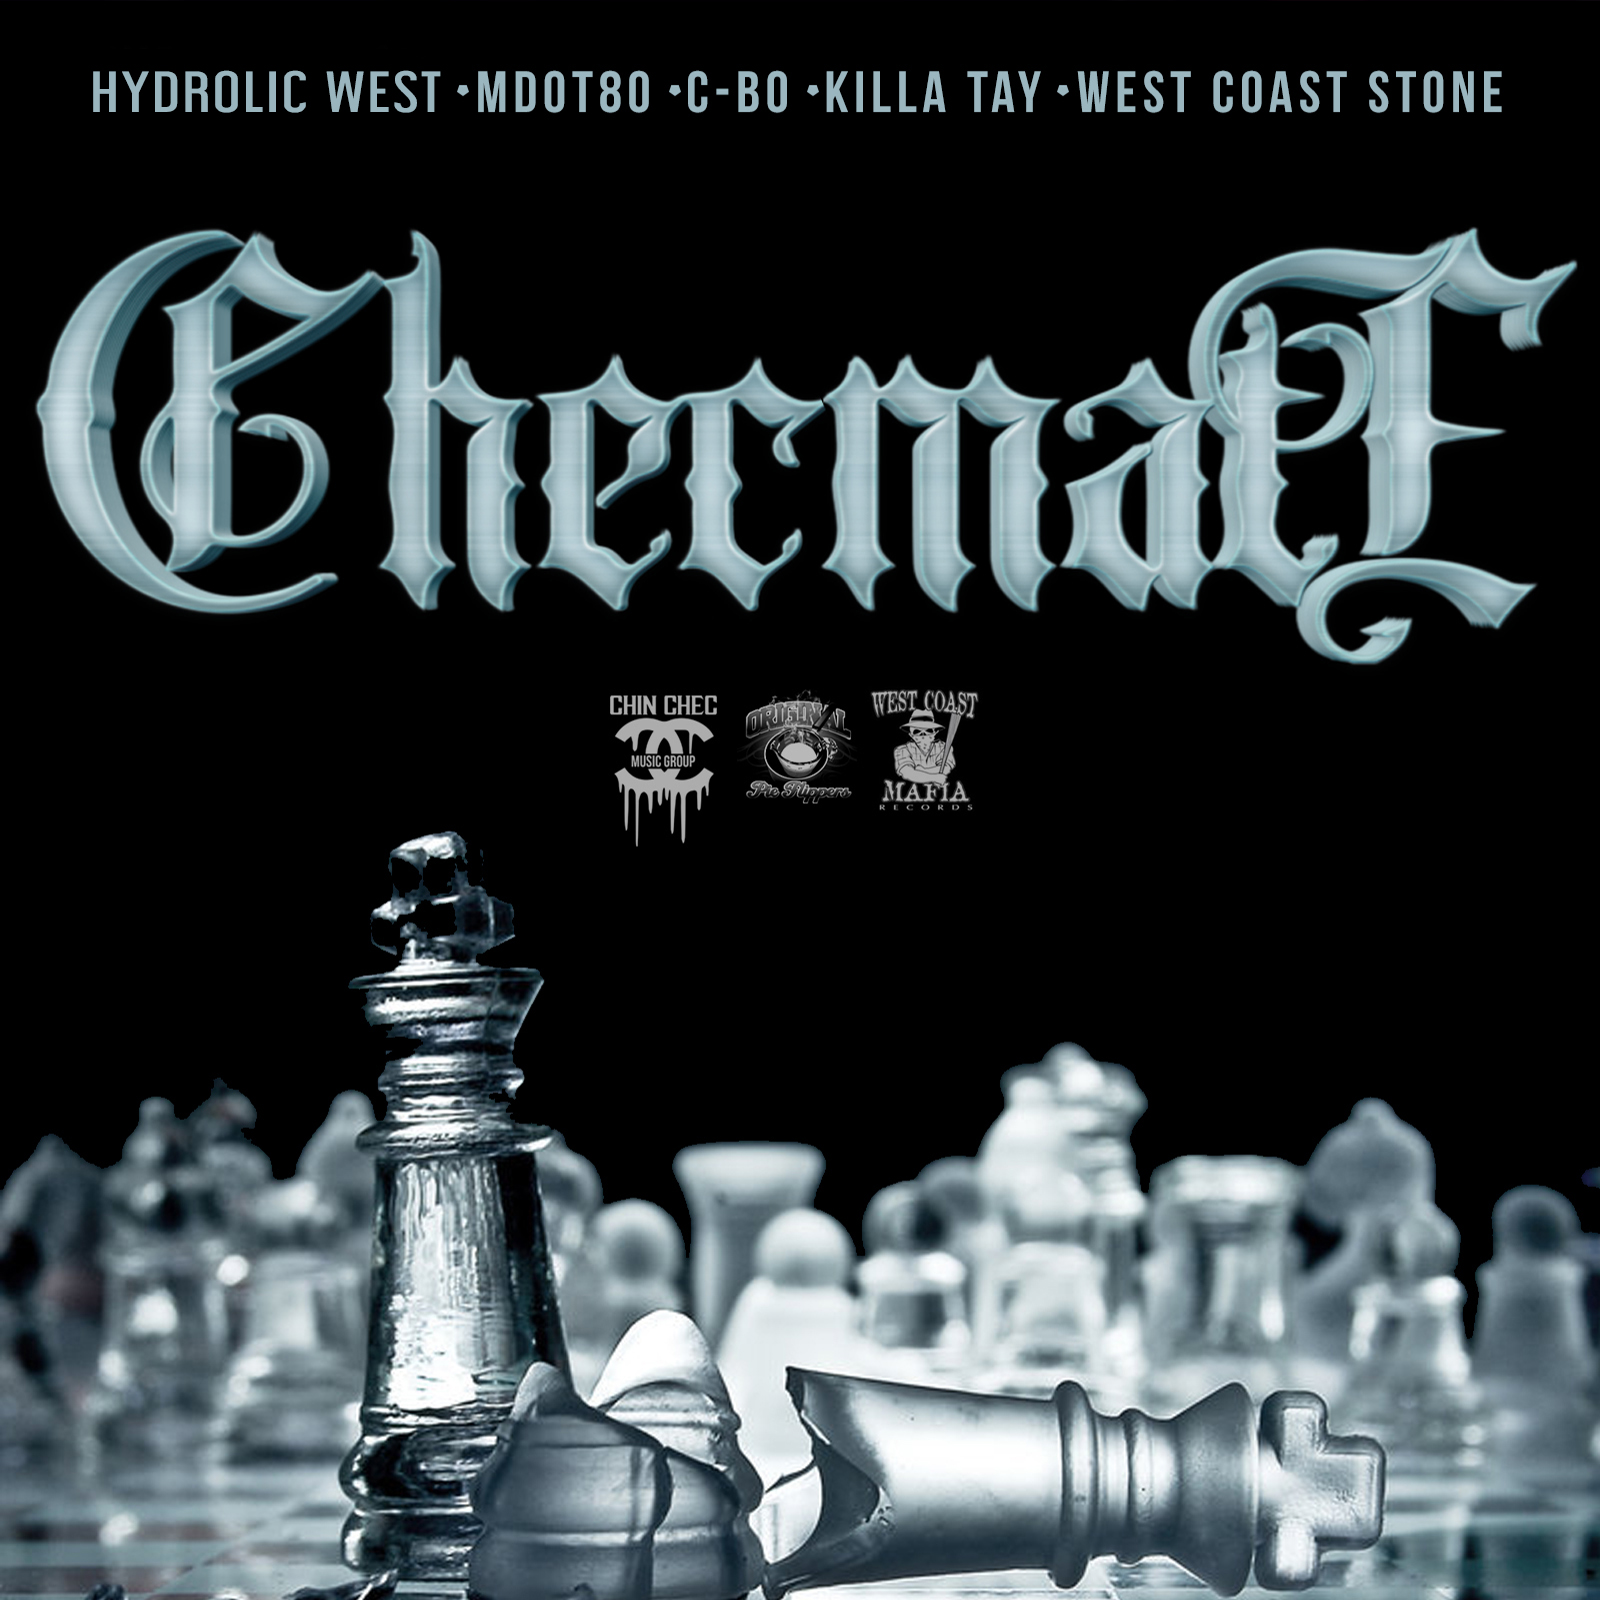 Checmate (feat. C-BO, MDOT 80, Killa Tay & West Cost Stone)